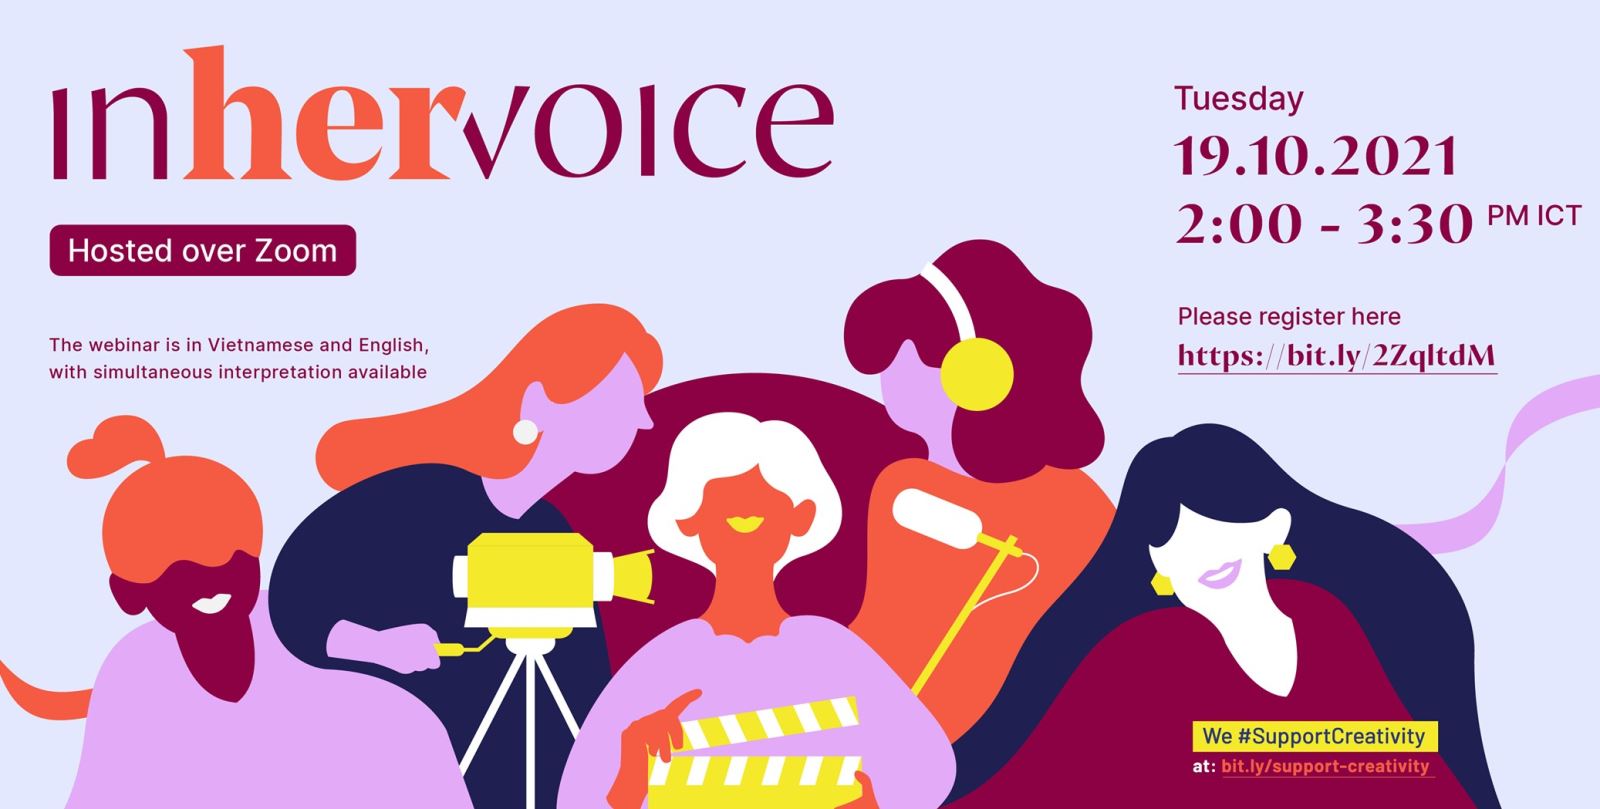 “In her voice” - tọa đàm trực tuyến về các nhà làm phim nữ